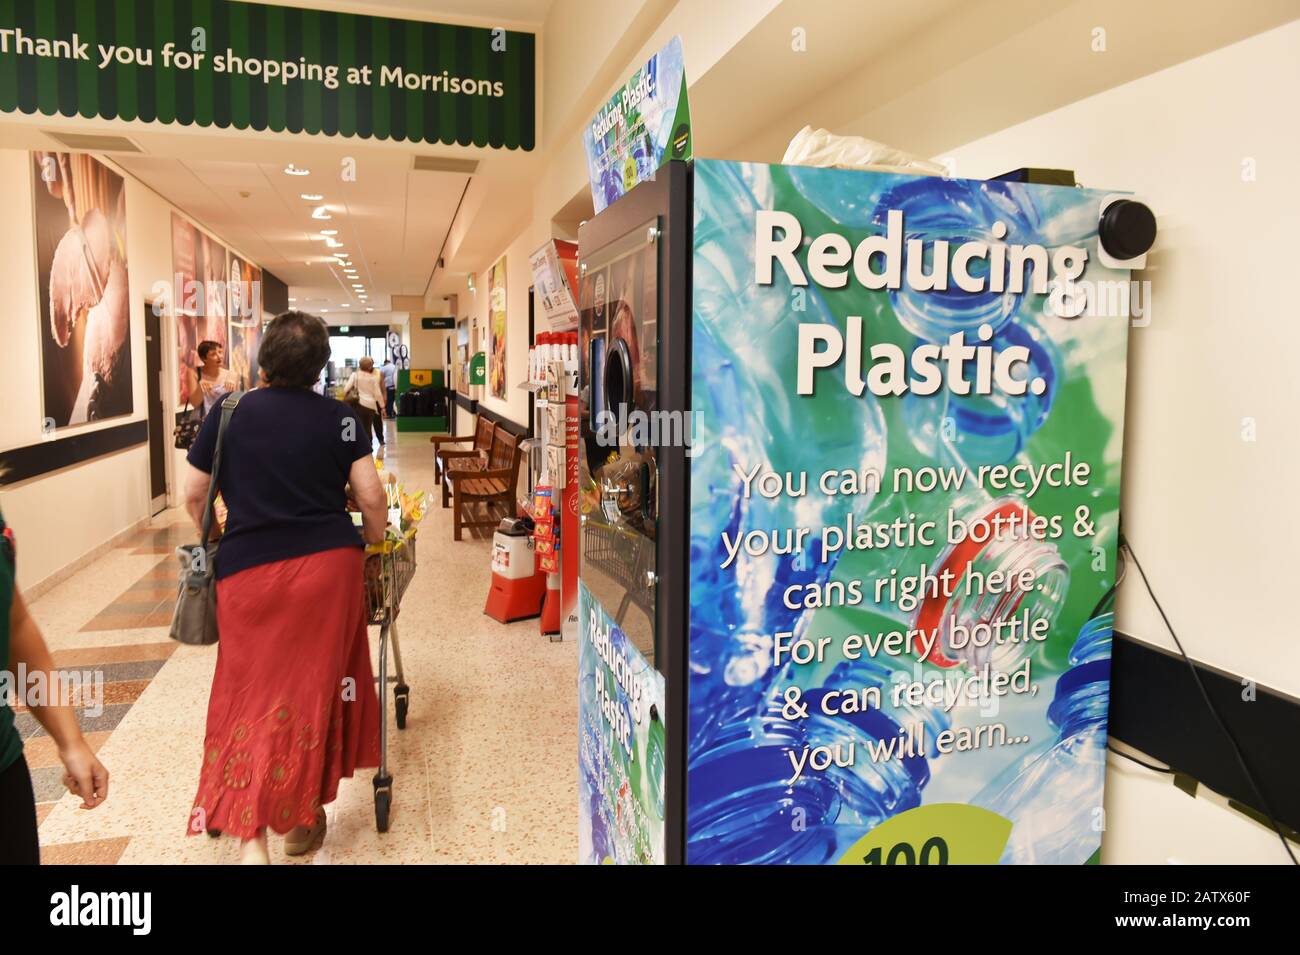 Morrisons Supermarkets sta provando un distributore automatico al negozio per consentire ai clienti di inserire bottiglie di plastica vuote e ricevere punti premio. Foto Stock